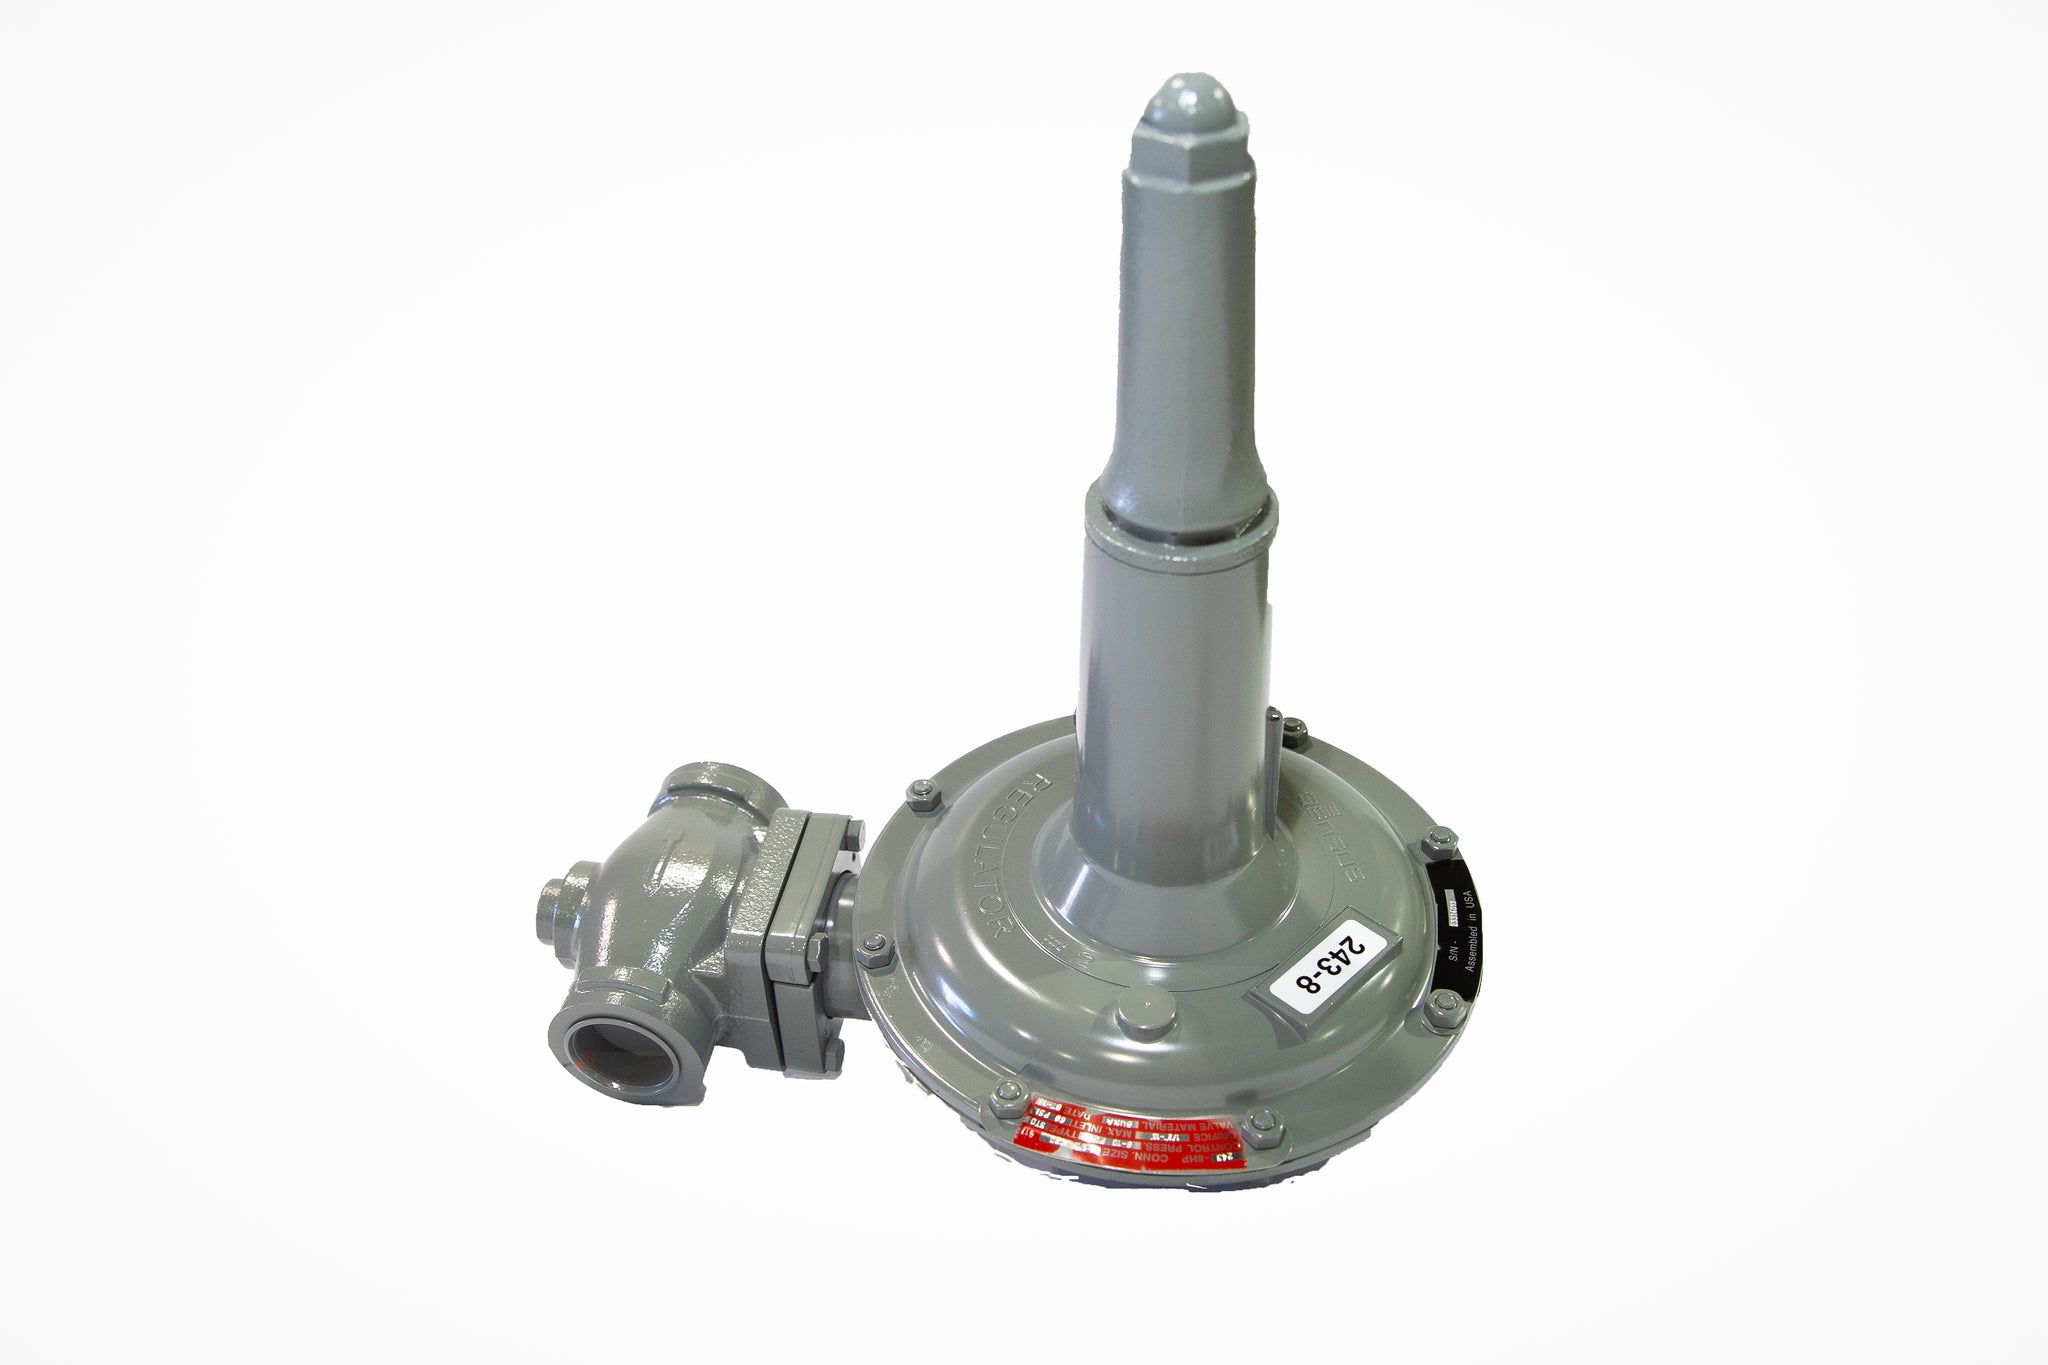 Sensus 243-8HP, 2"NPT gas regulator w/ 1" orifice, Cadmium spring(3-6.5 PSIG)